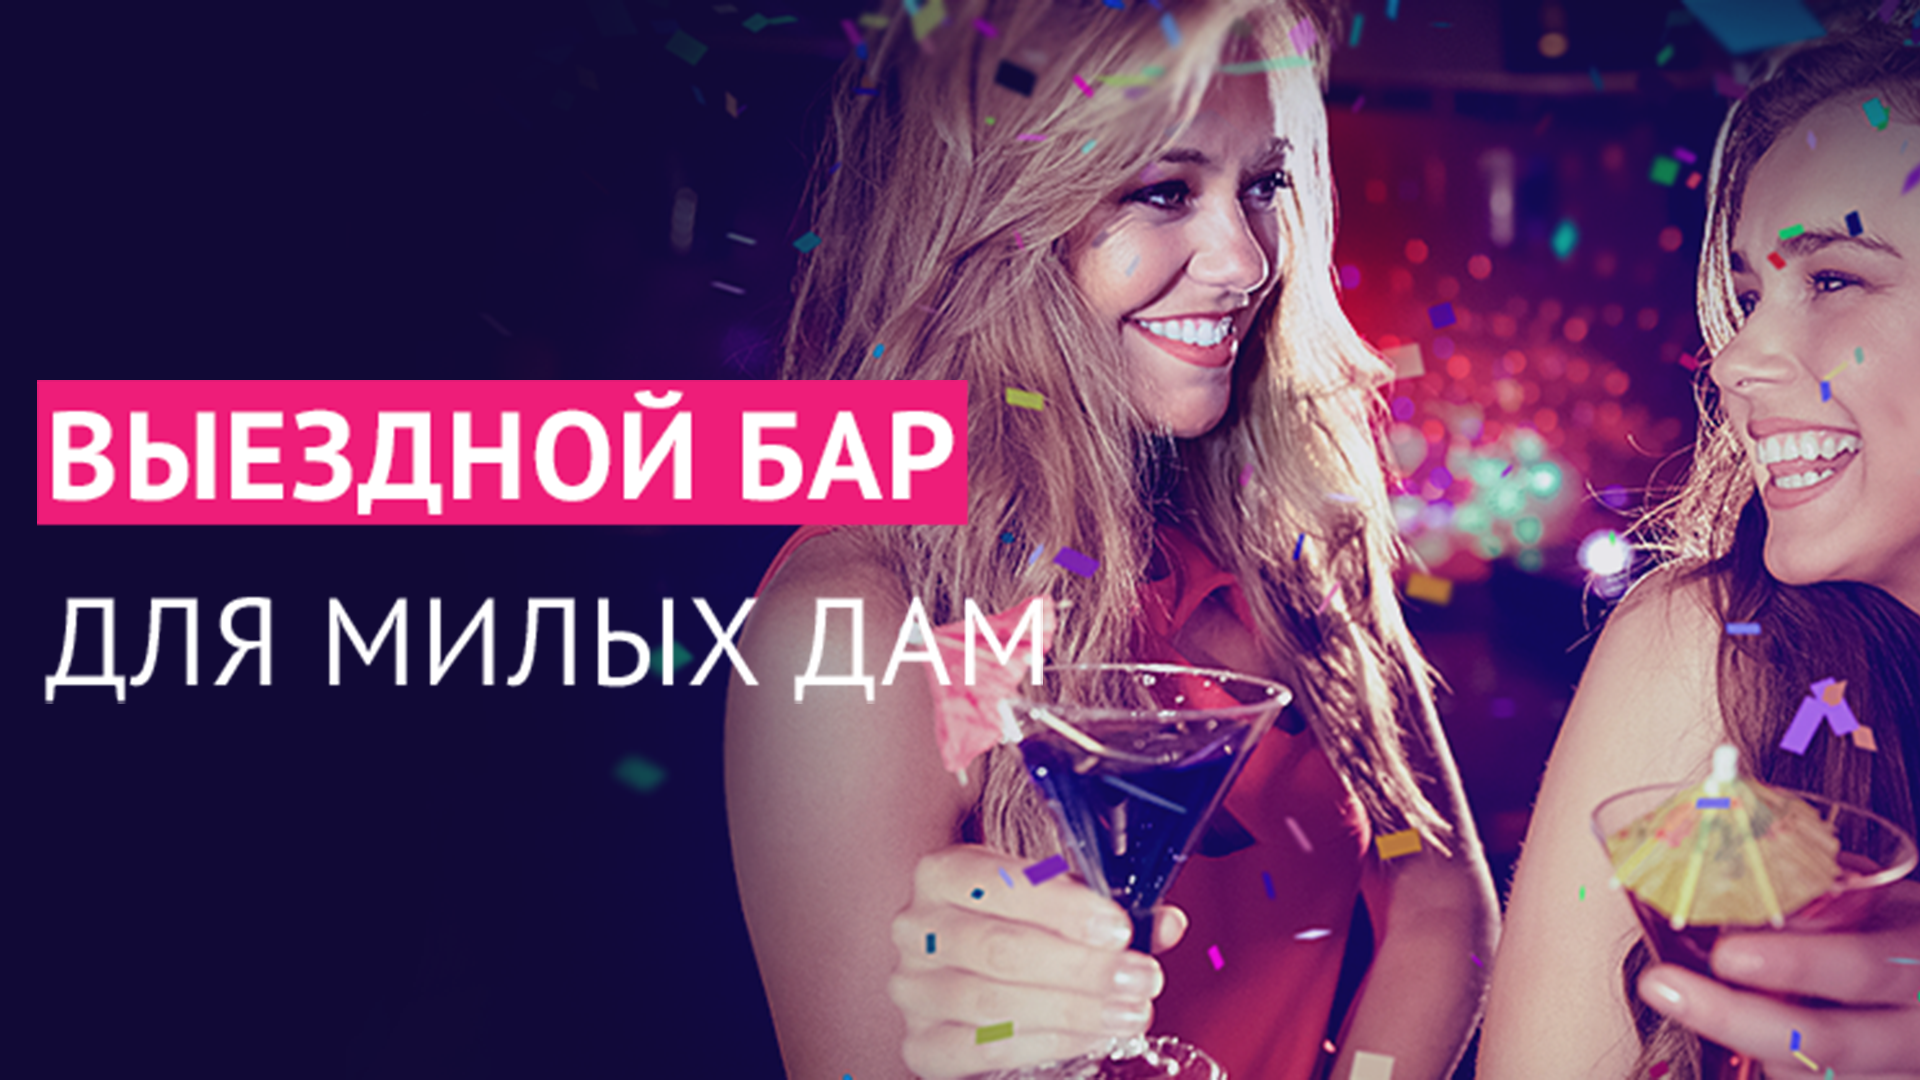 Бармен шоу на свадьбу, праздник и выездной бар в Санкт-Петербурге (СПб)